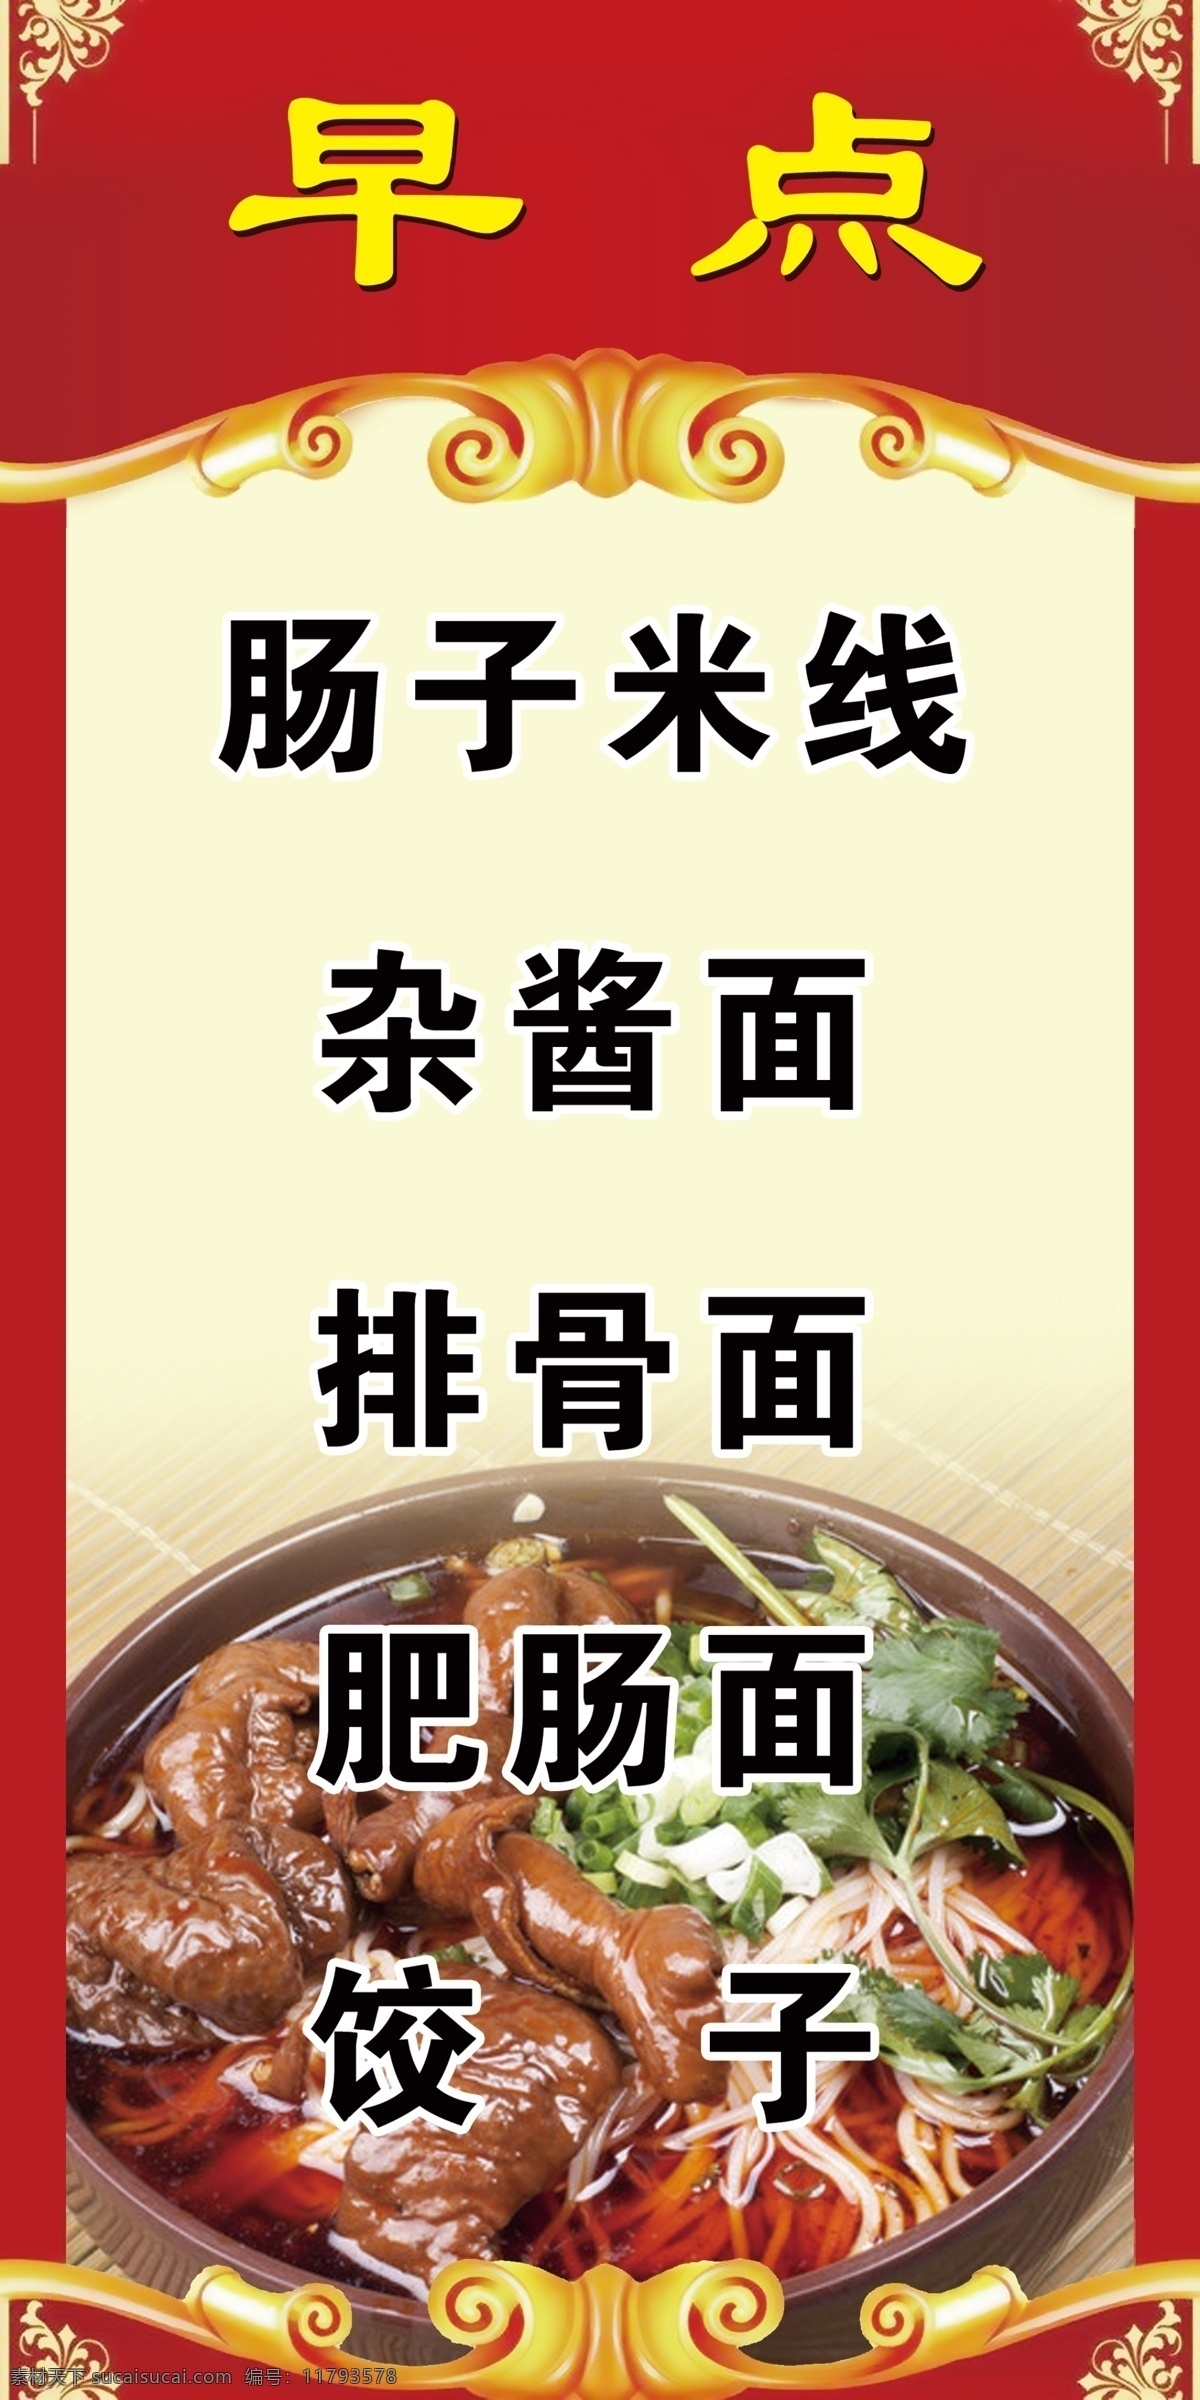 早点 小吃海报 柱子贴图 米线 面条 肥肠面 饺子 分层图 娱乐餐饮 生活百科 餐饮美食